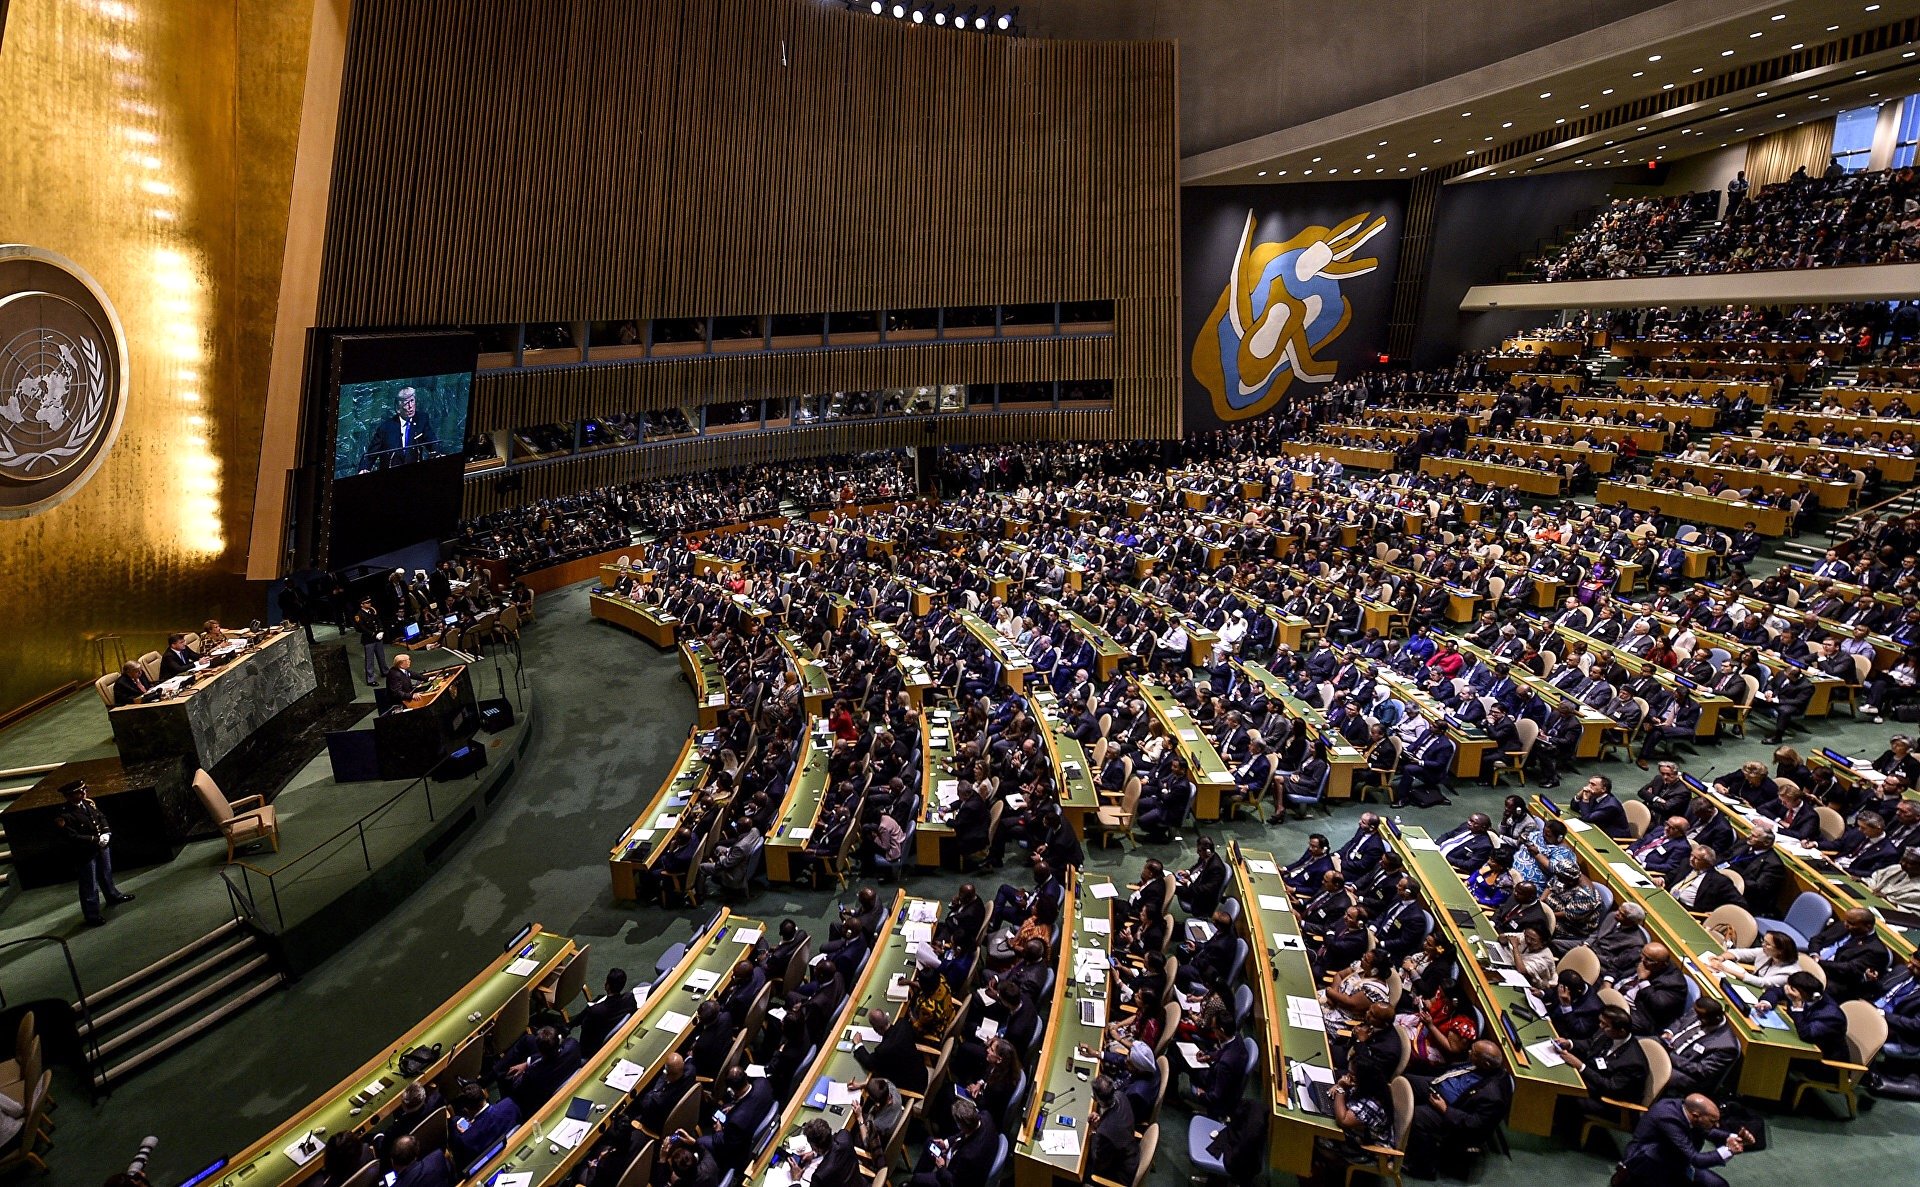 ՄԱԿ-ի Գլխավոր ասամբլեան Ղրիմի վերաբերյալ նոր բանաձև է ընդունել